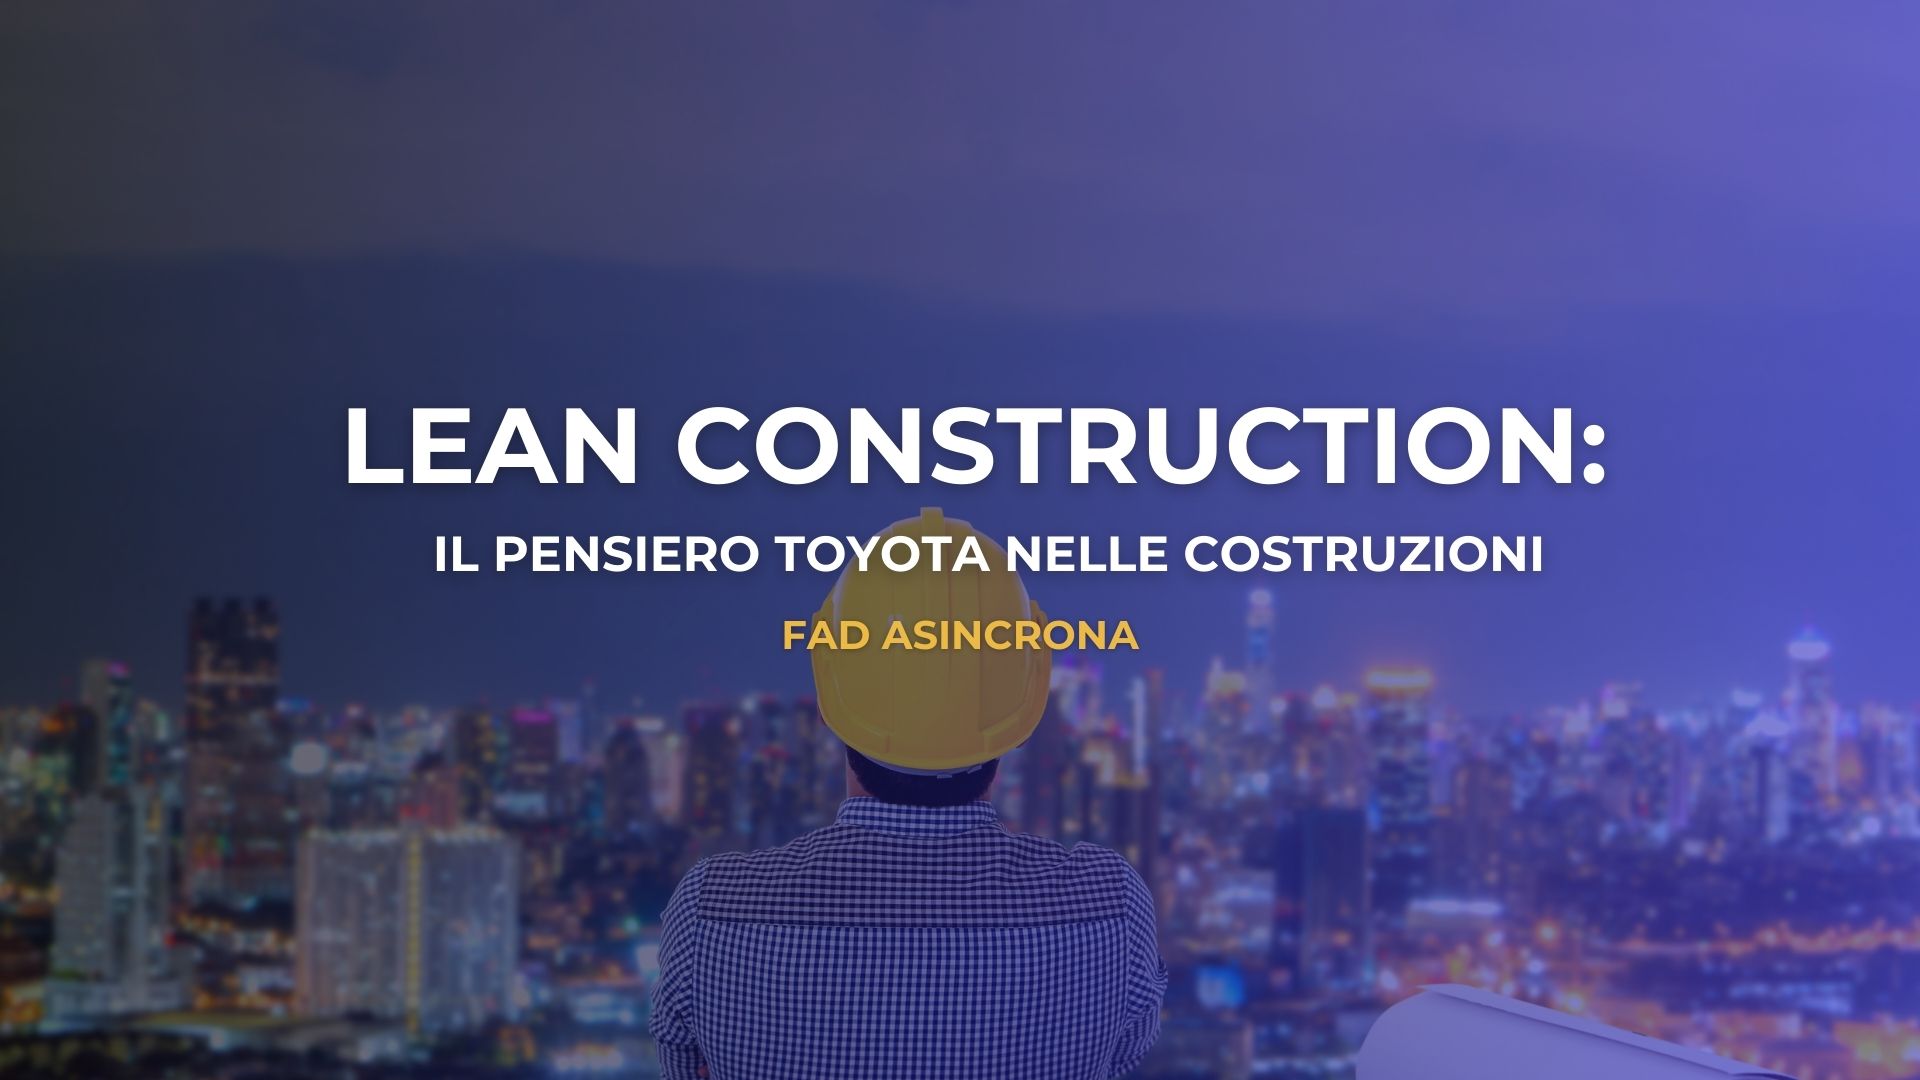 LEAN CONSTRUCTION: IL PENSIERO TOYOTA NELLE COSTRUZIONI